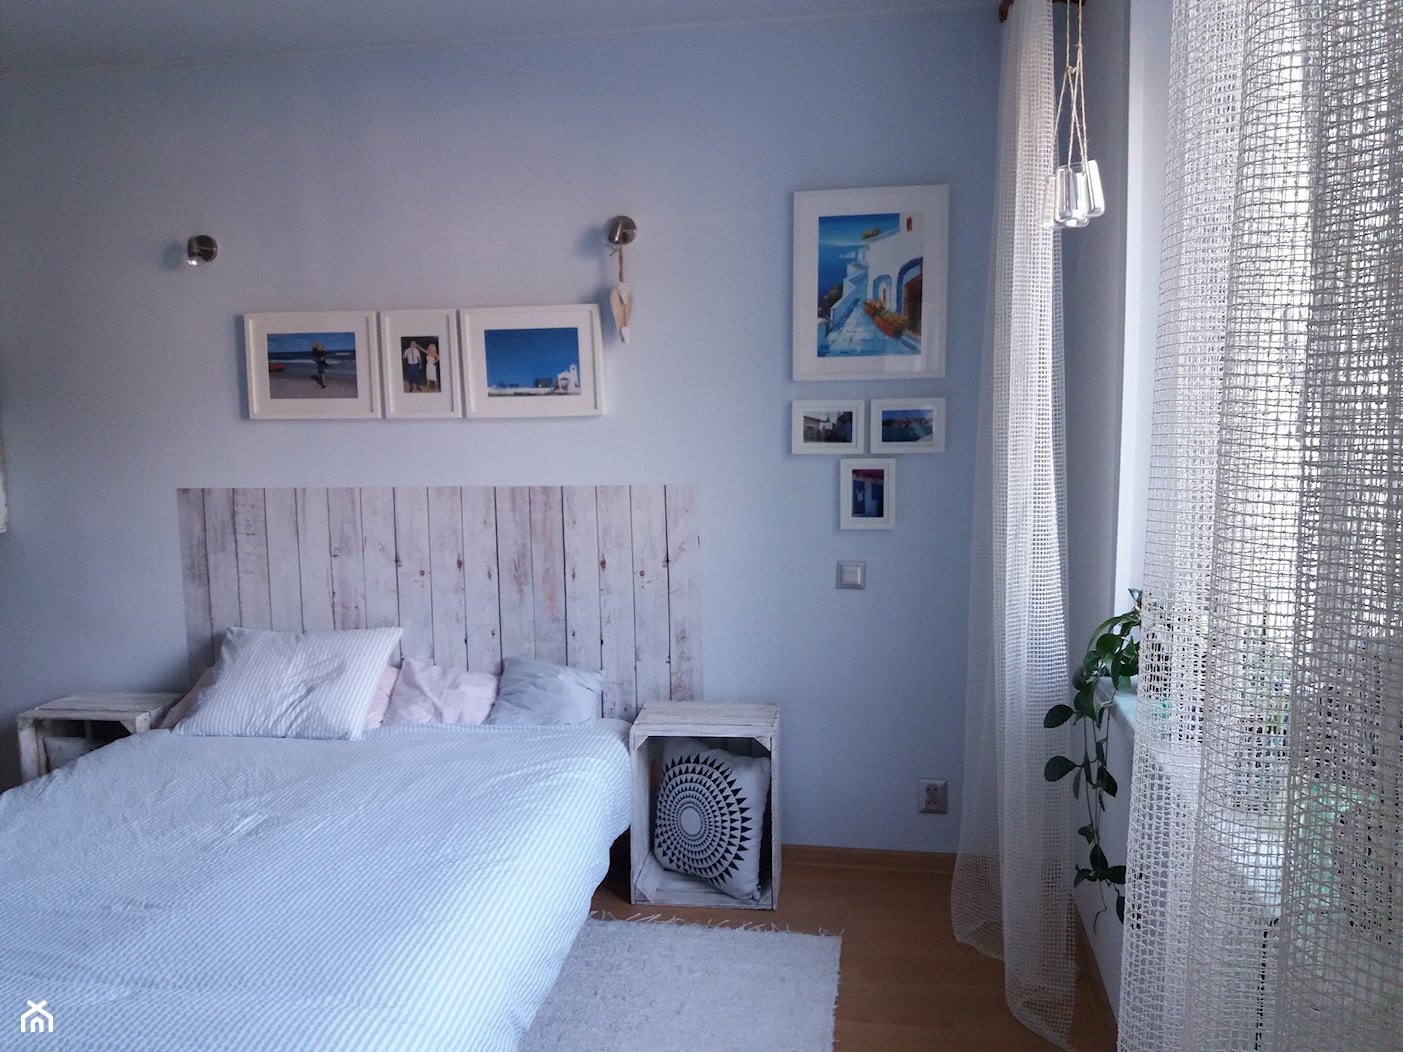 Sypialnia w błękicie - Mała biała sypialnia, styl skandynawski - zdjęcie od Paula Jakaś - Homebook